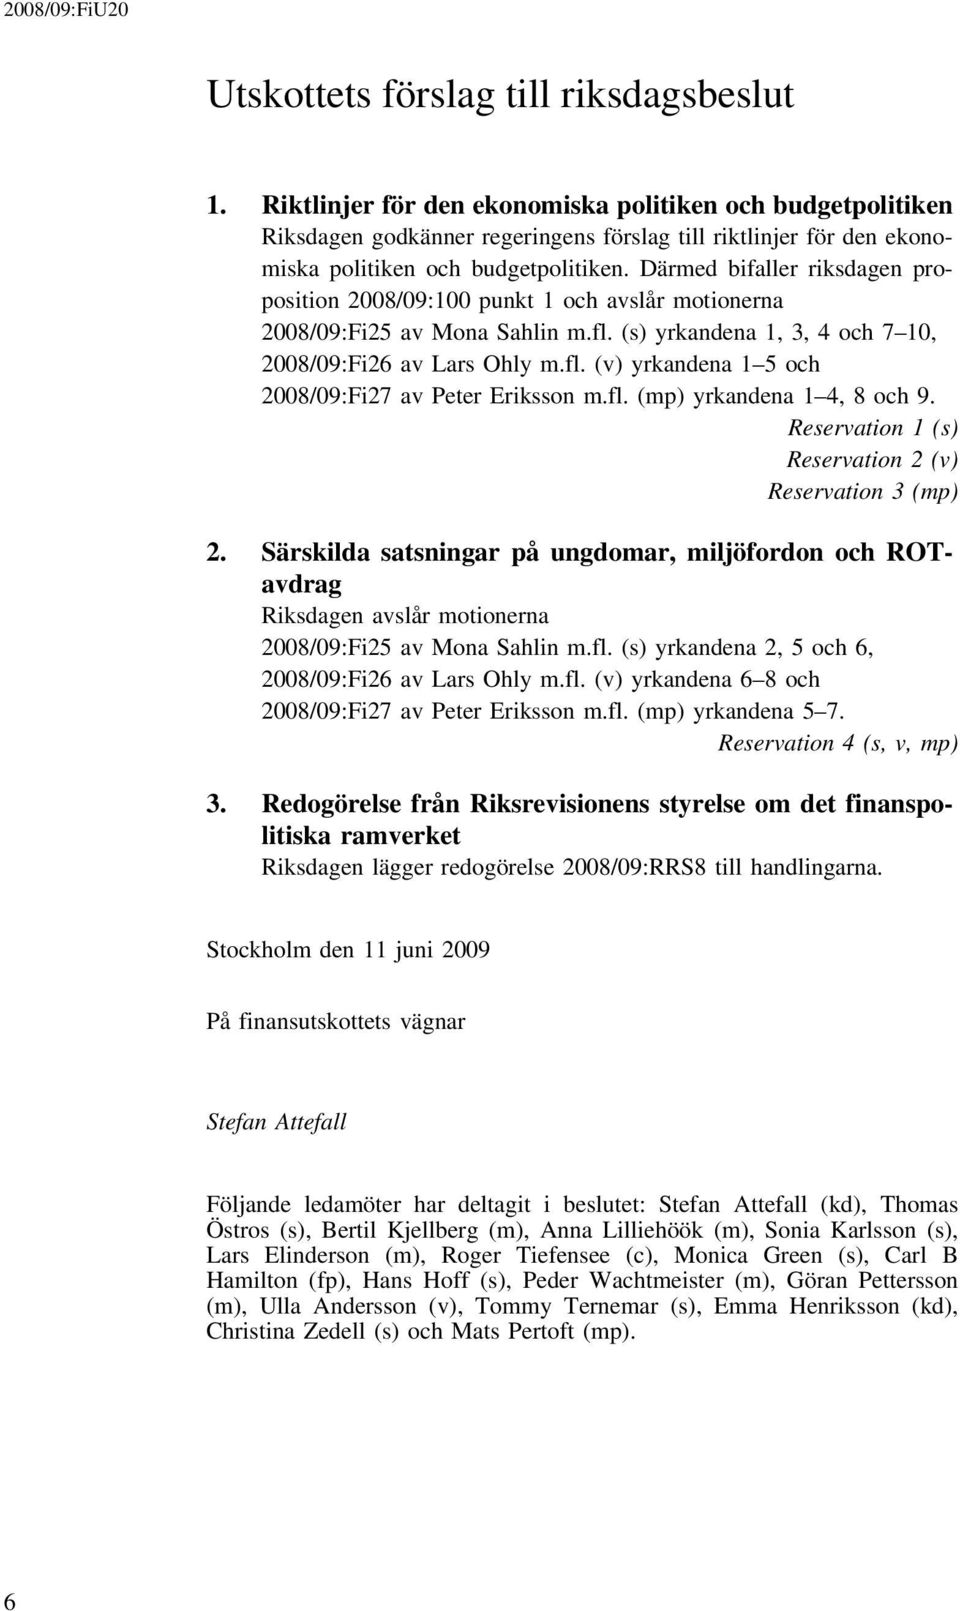 Därmed bifaller riksdagen proposition 2008/09:100 punkt 1 och avslår motionerna 2008/09:Fi25 av Mona Sahlin m.fl. (s) yrkandena 1, 3, 4 och 7 10, 2008/09:Fi26 av Lars Ohly m.fl. (v) yrkandena 1 5 och 2008/09:Fi27 av Peter Eriksson m.